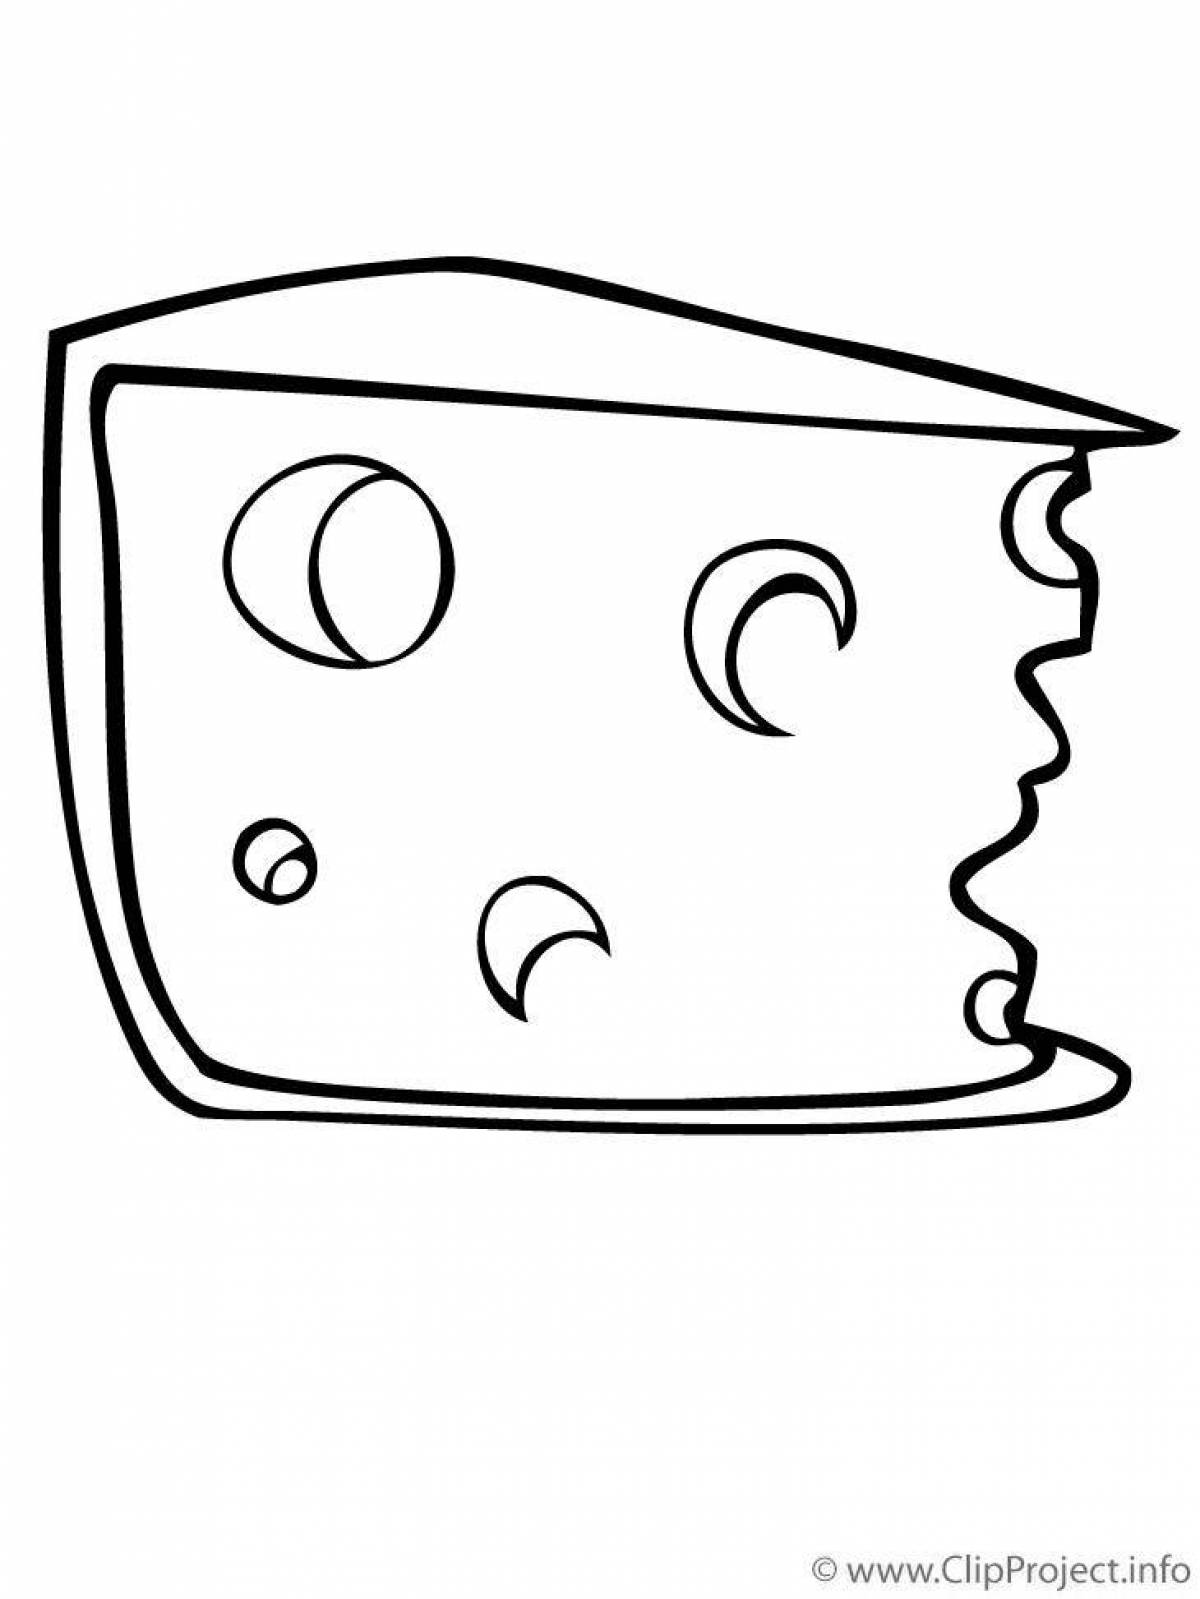 Сказочная страница раскраски сыра для детей